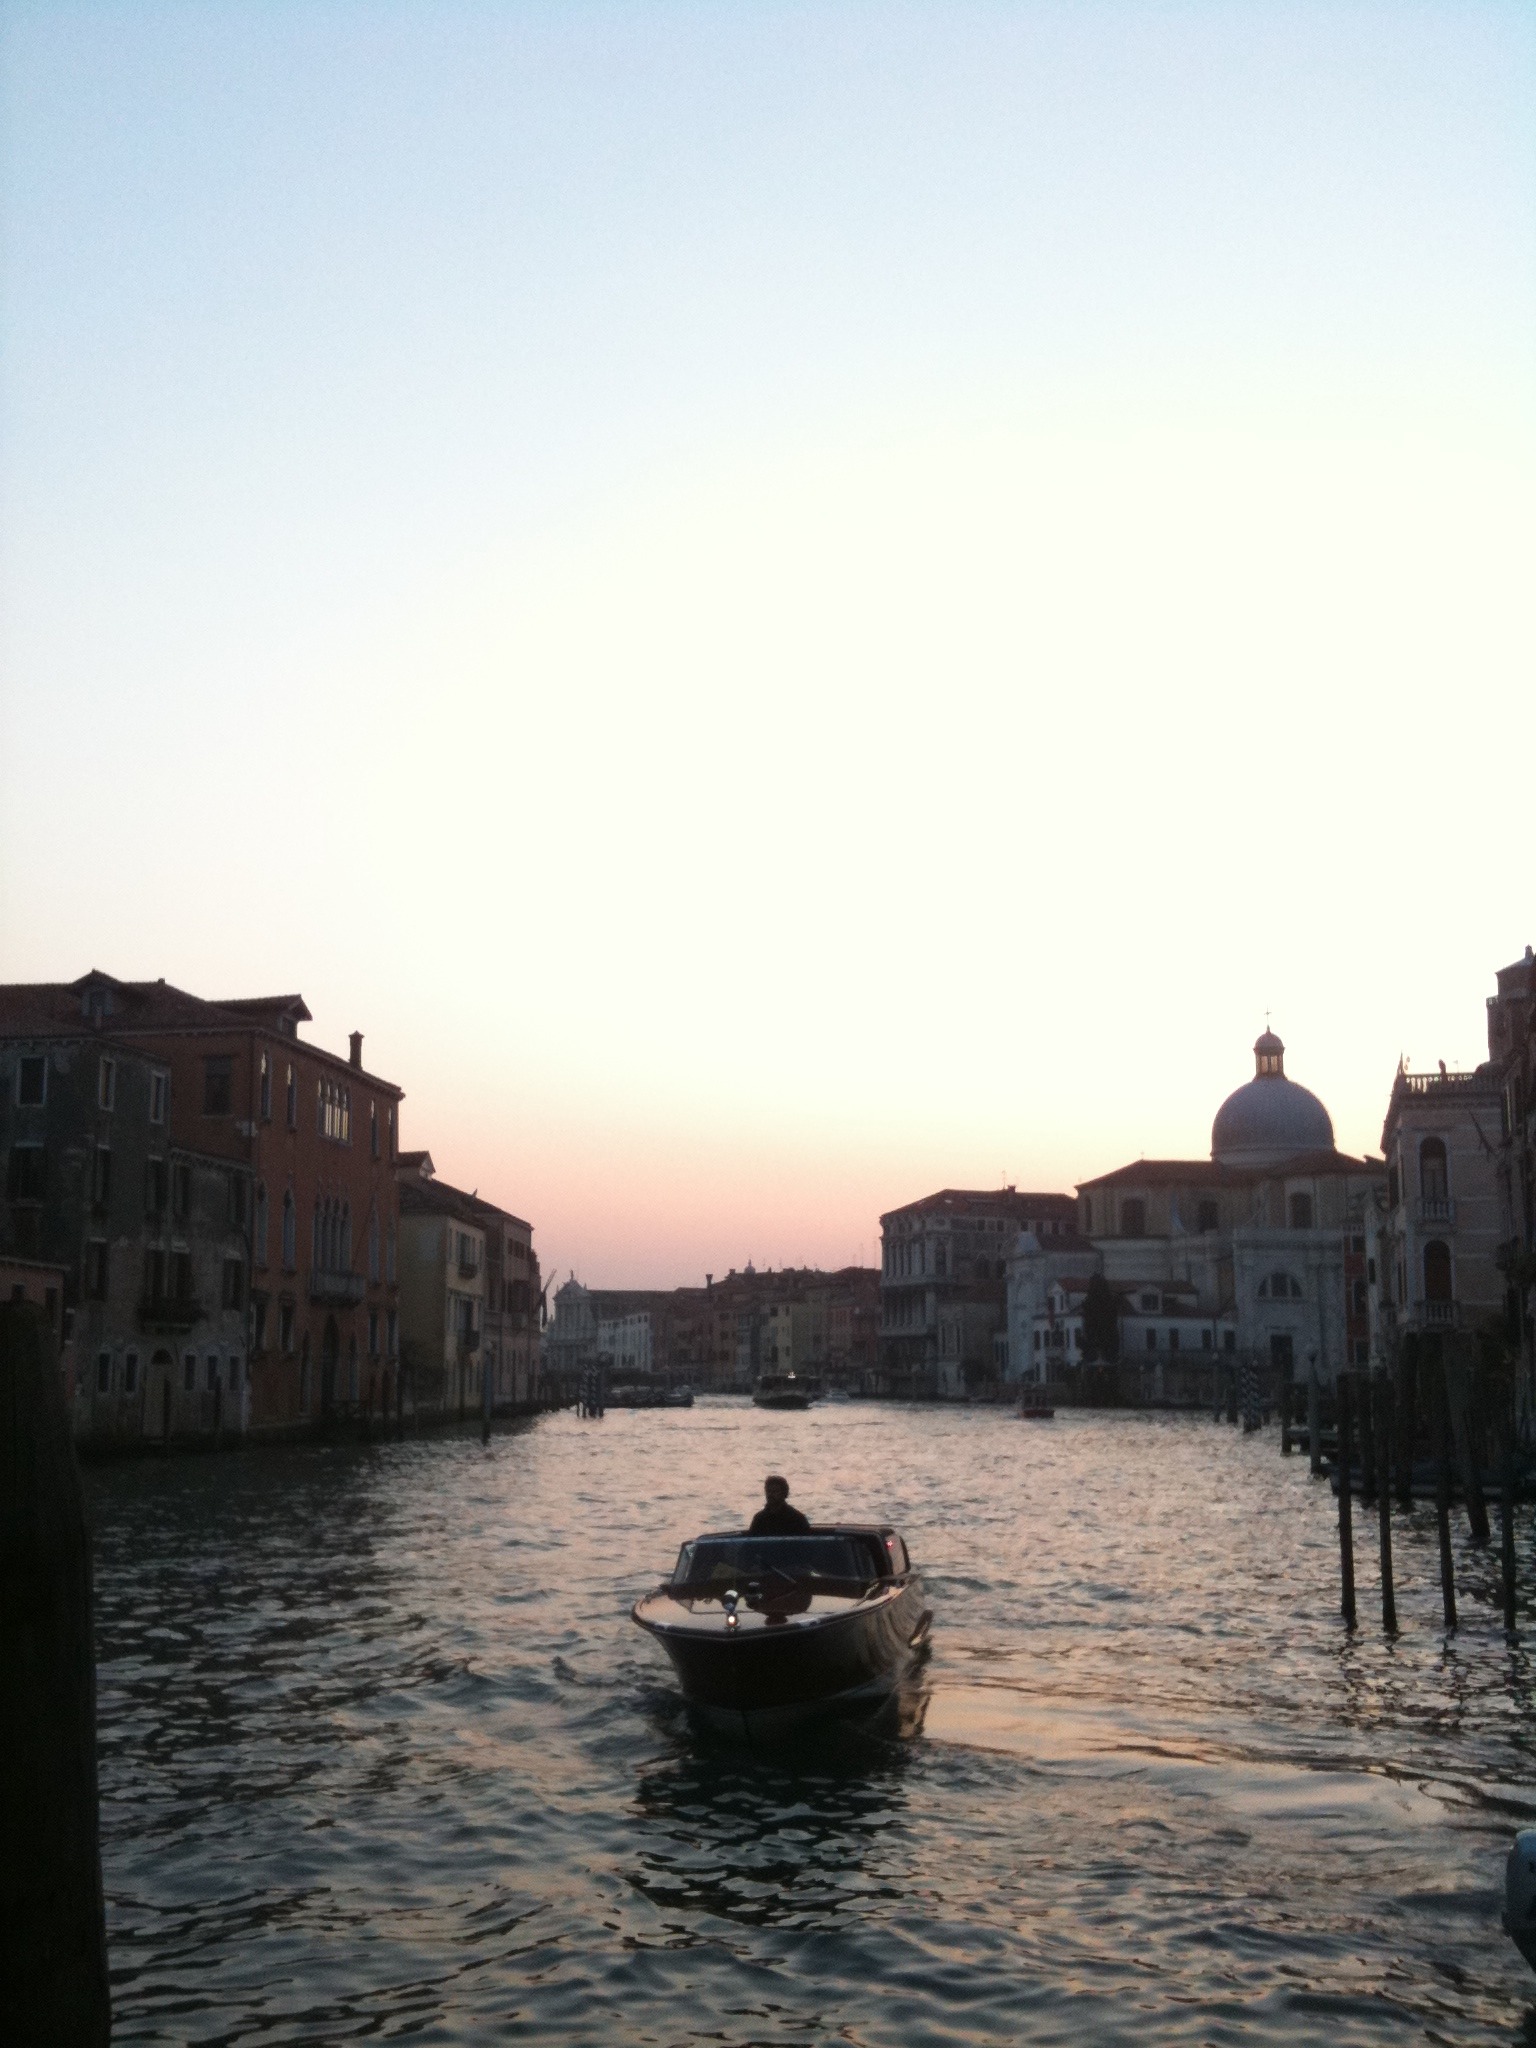 Venice - Mobile Photos - Day 5